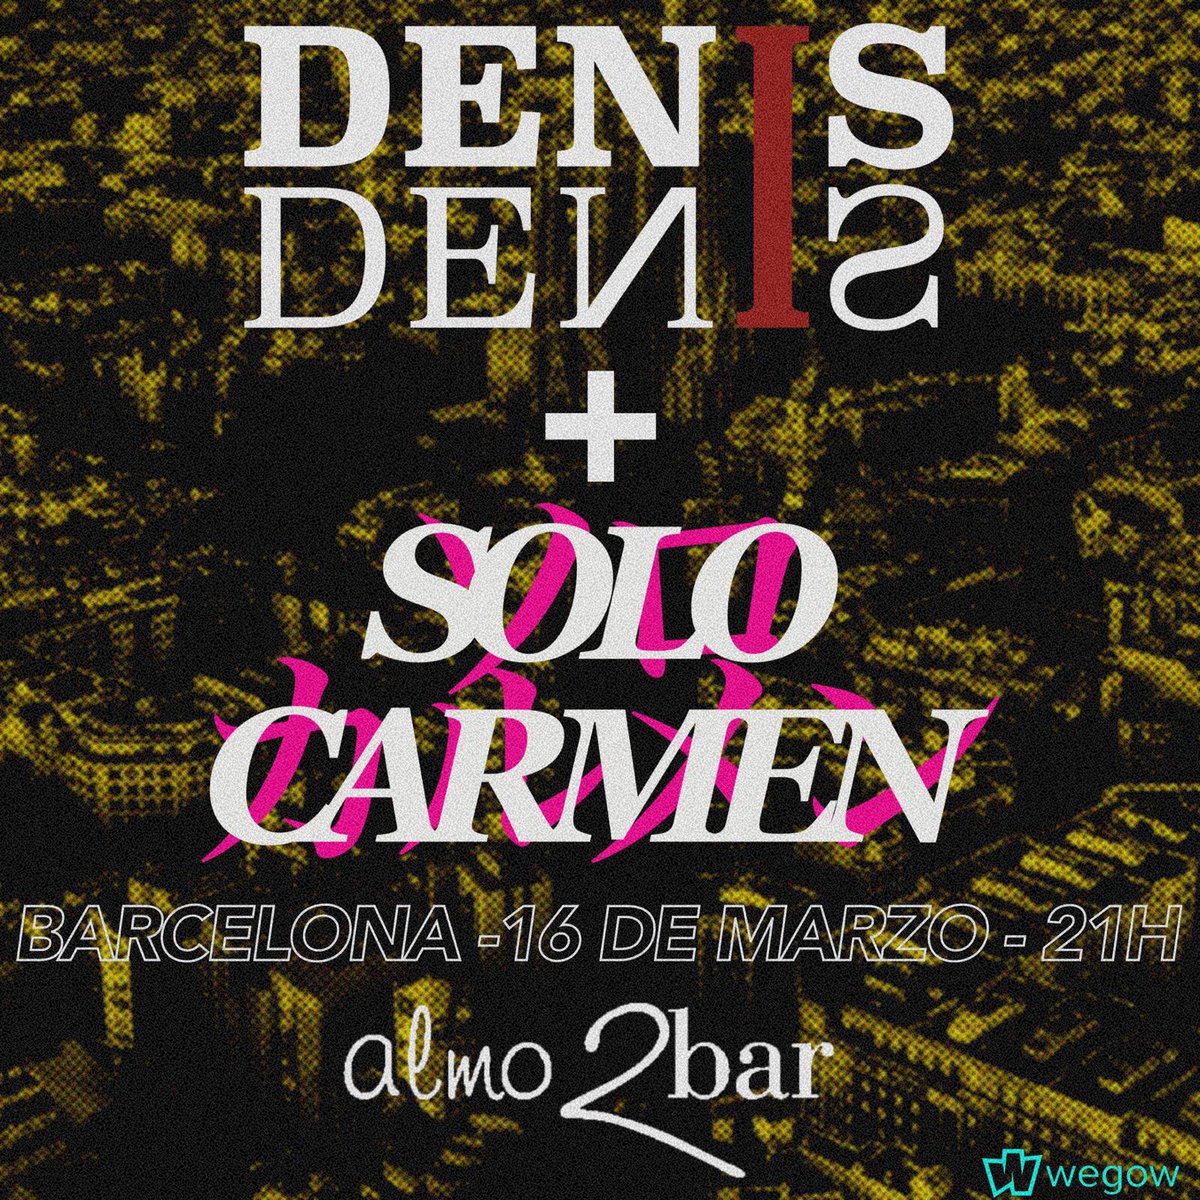 El 16 de marzo tocamos en @Almo2bar con @SOYDENISDENIS VENTEEEE 🪩 Entradas 🎫 wegow.com/se/concerts/de… #solocarmen #barcelona #bcn #bolo #concierto #almo2bar